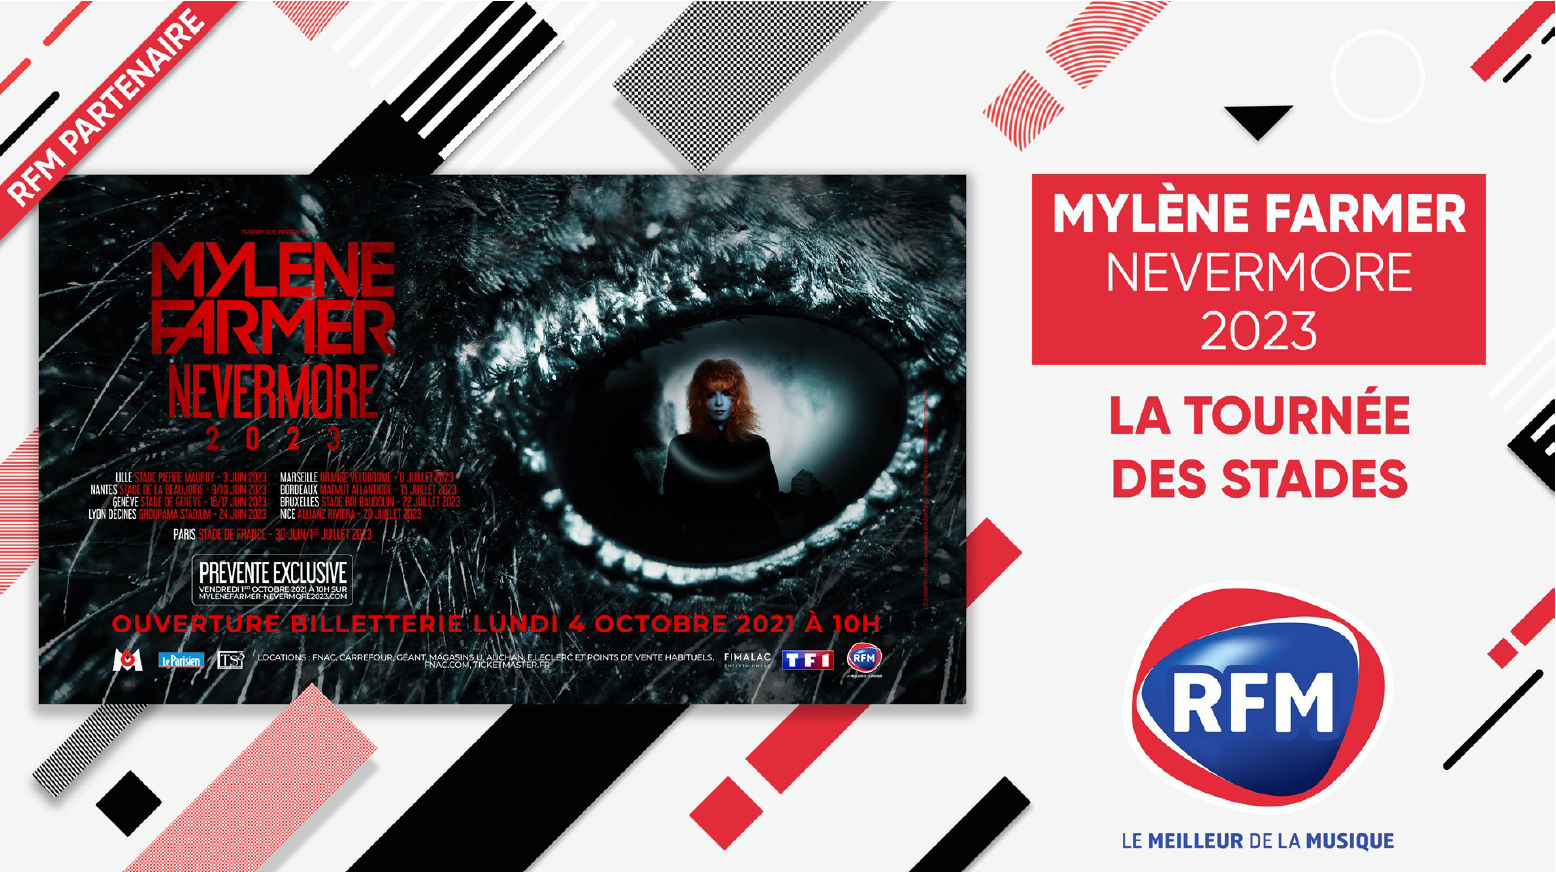 RFM : partenaire radio exclusif de la tournée de Mylène Farmer